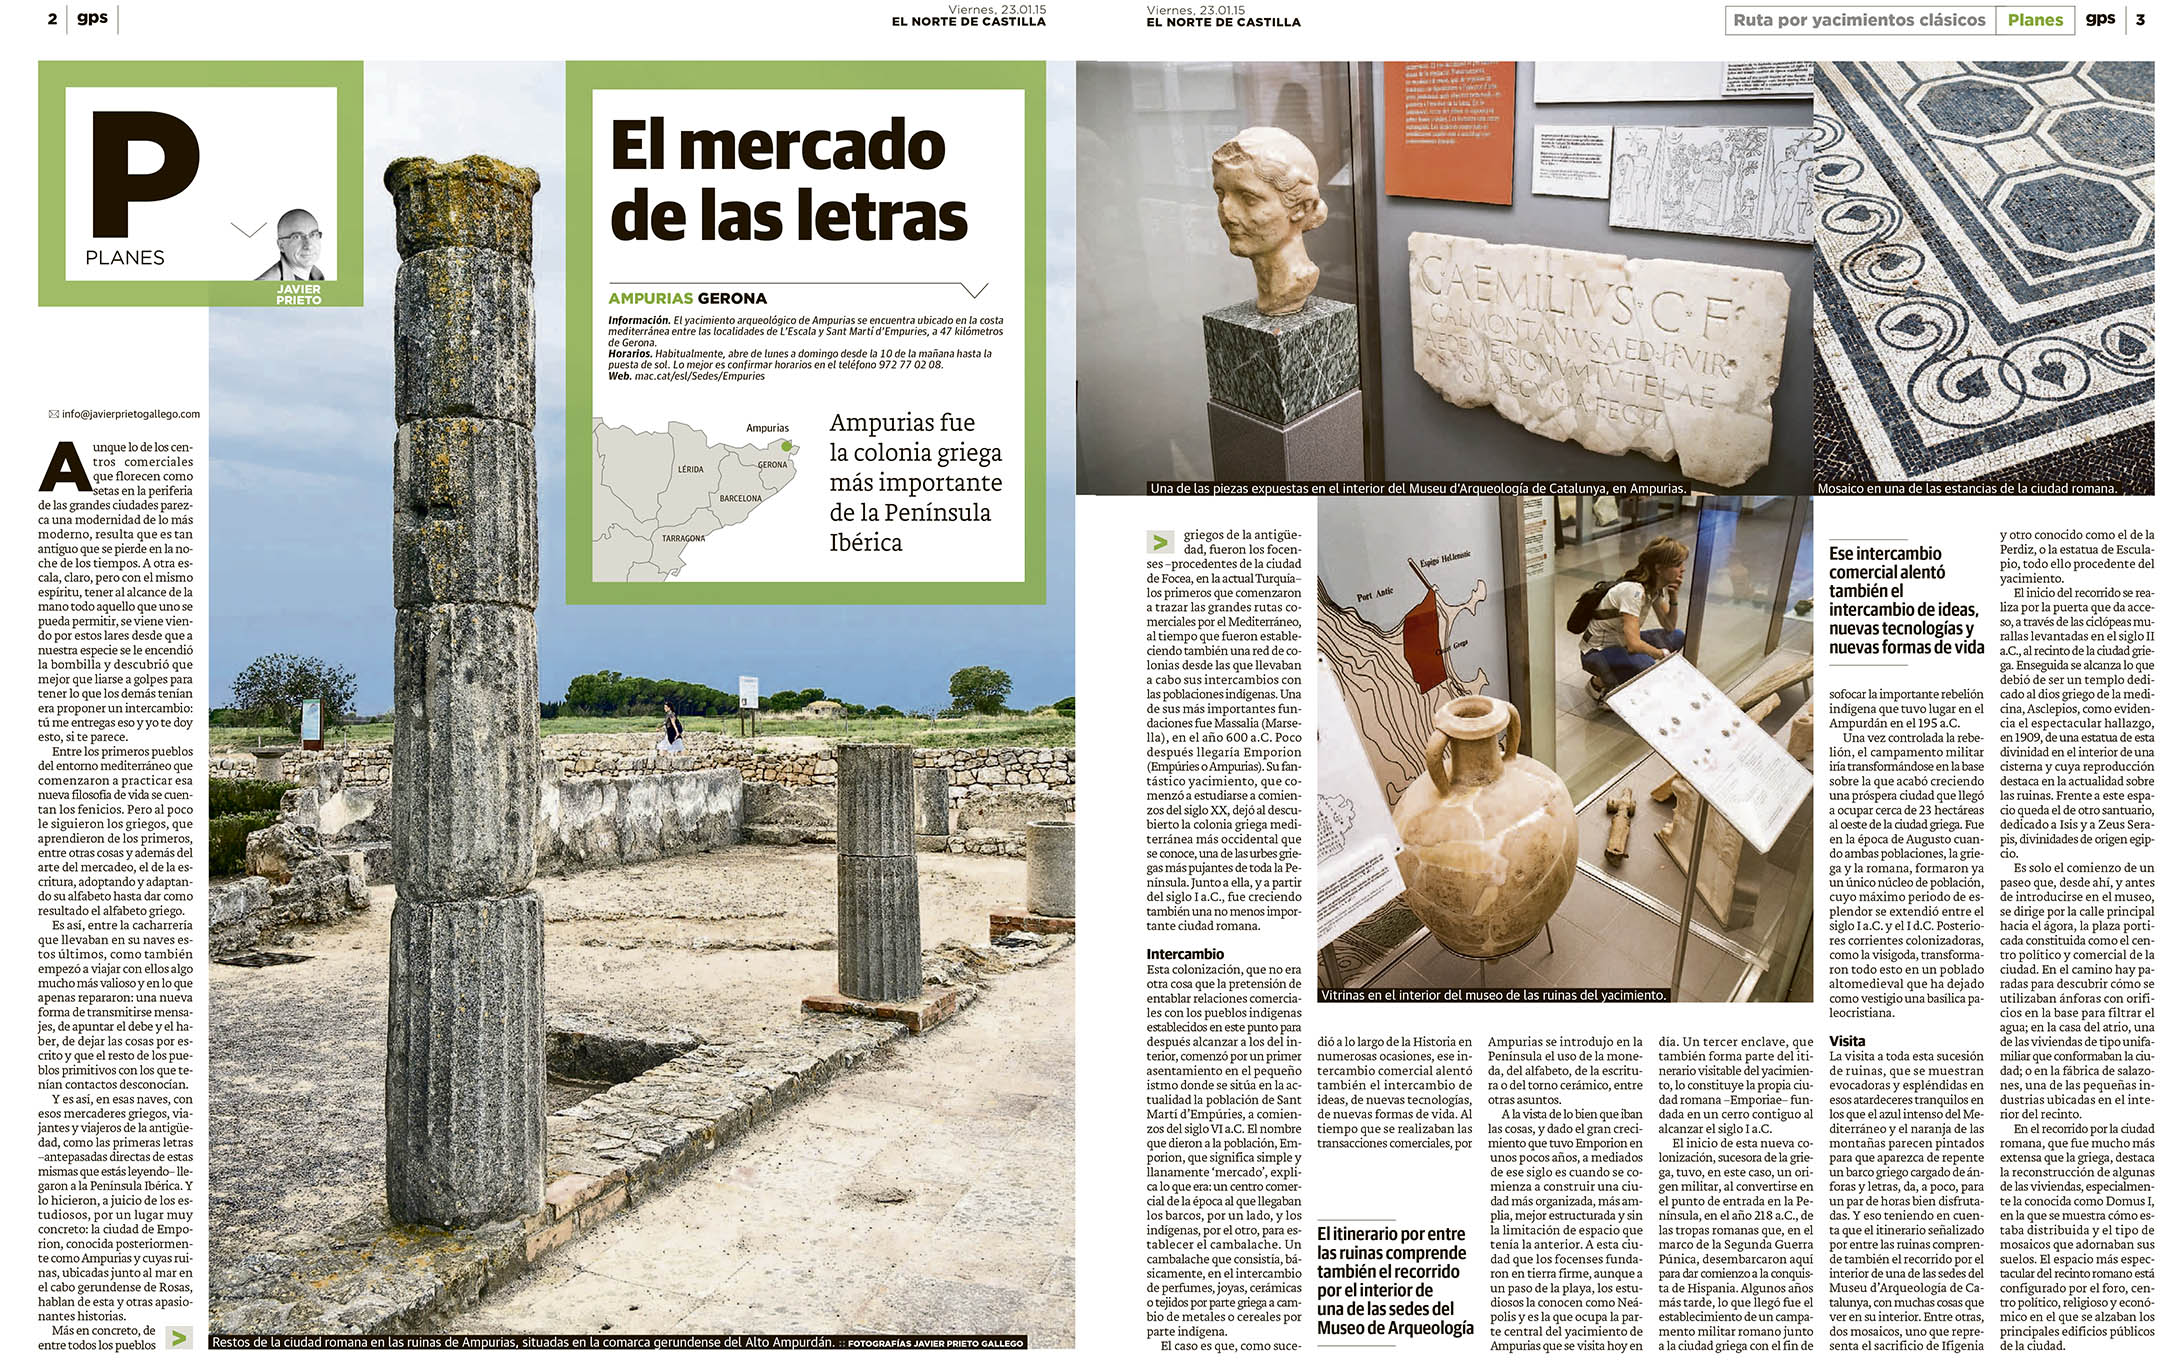 Reportaje sobre el yacimiento de Ampurias publicado en EL NORTE DE CASTILLA  por Javier Prieto Gallego.